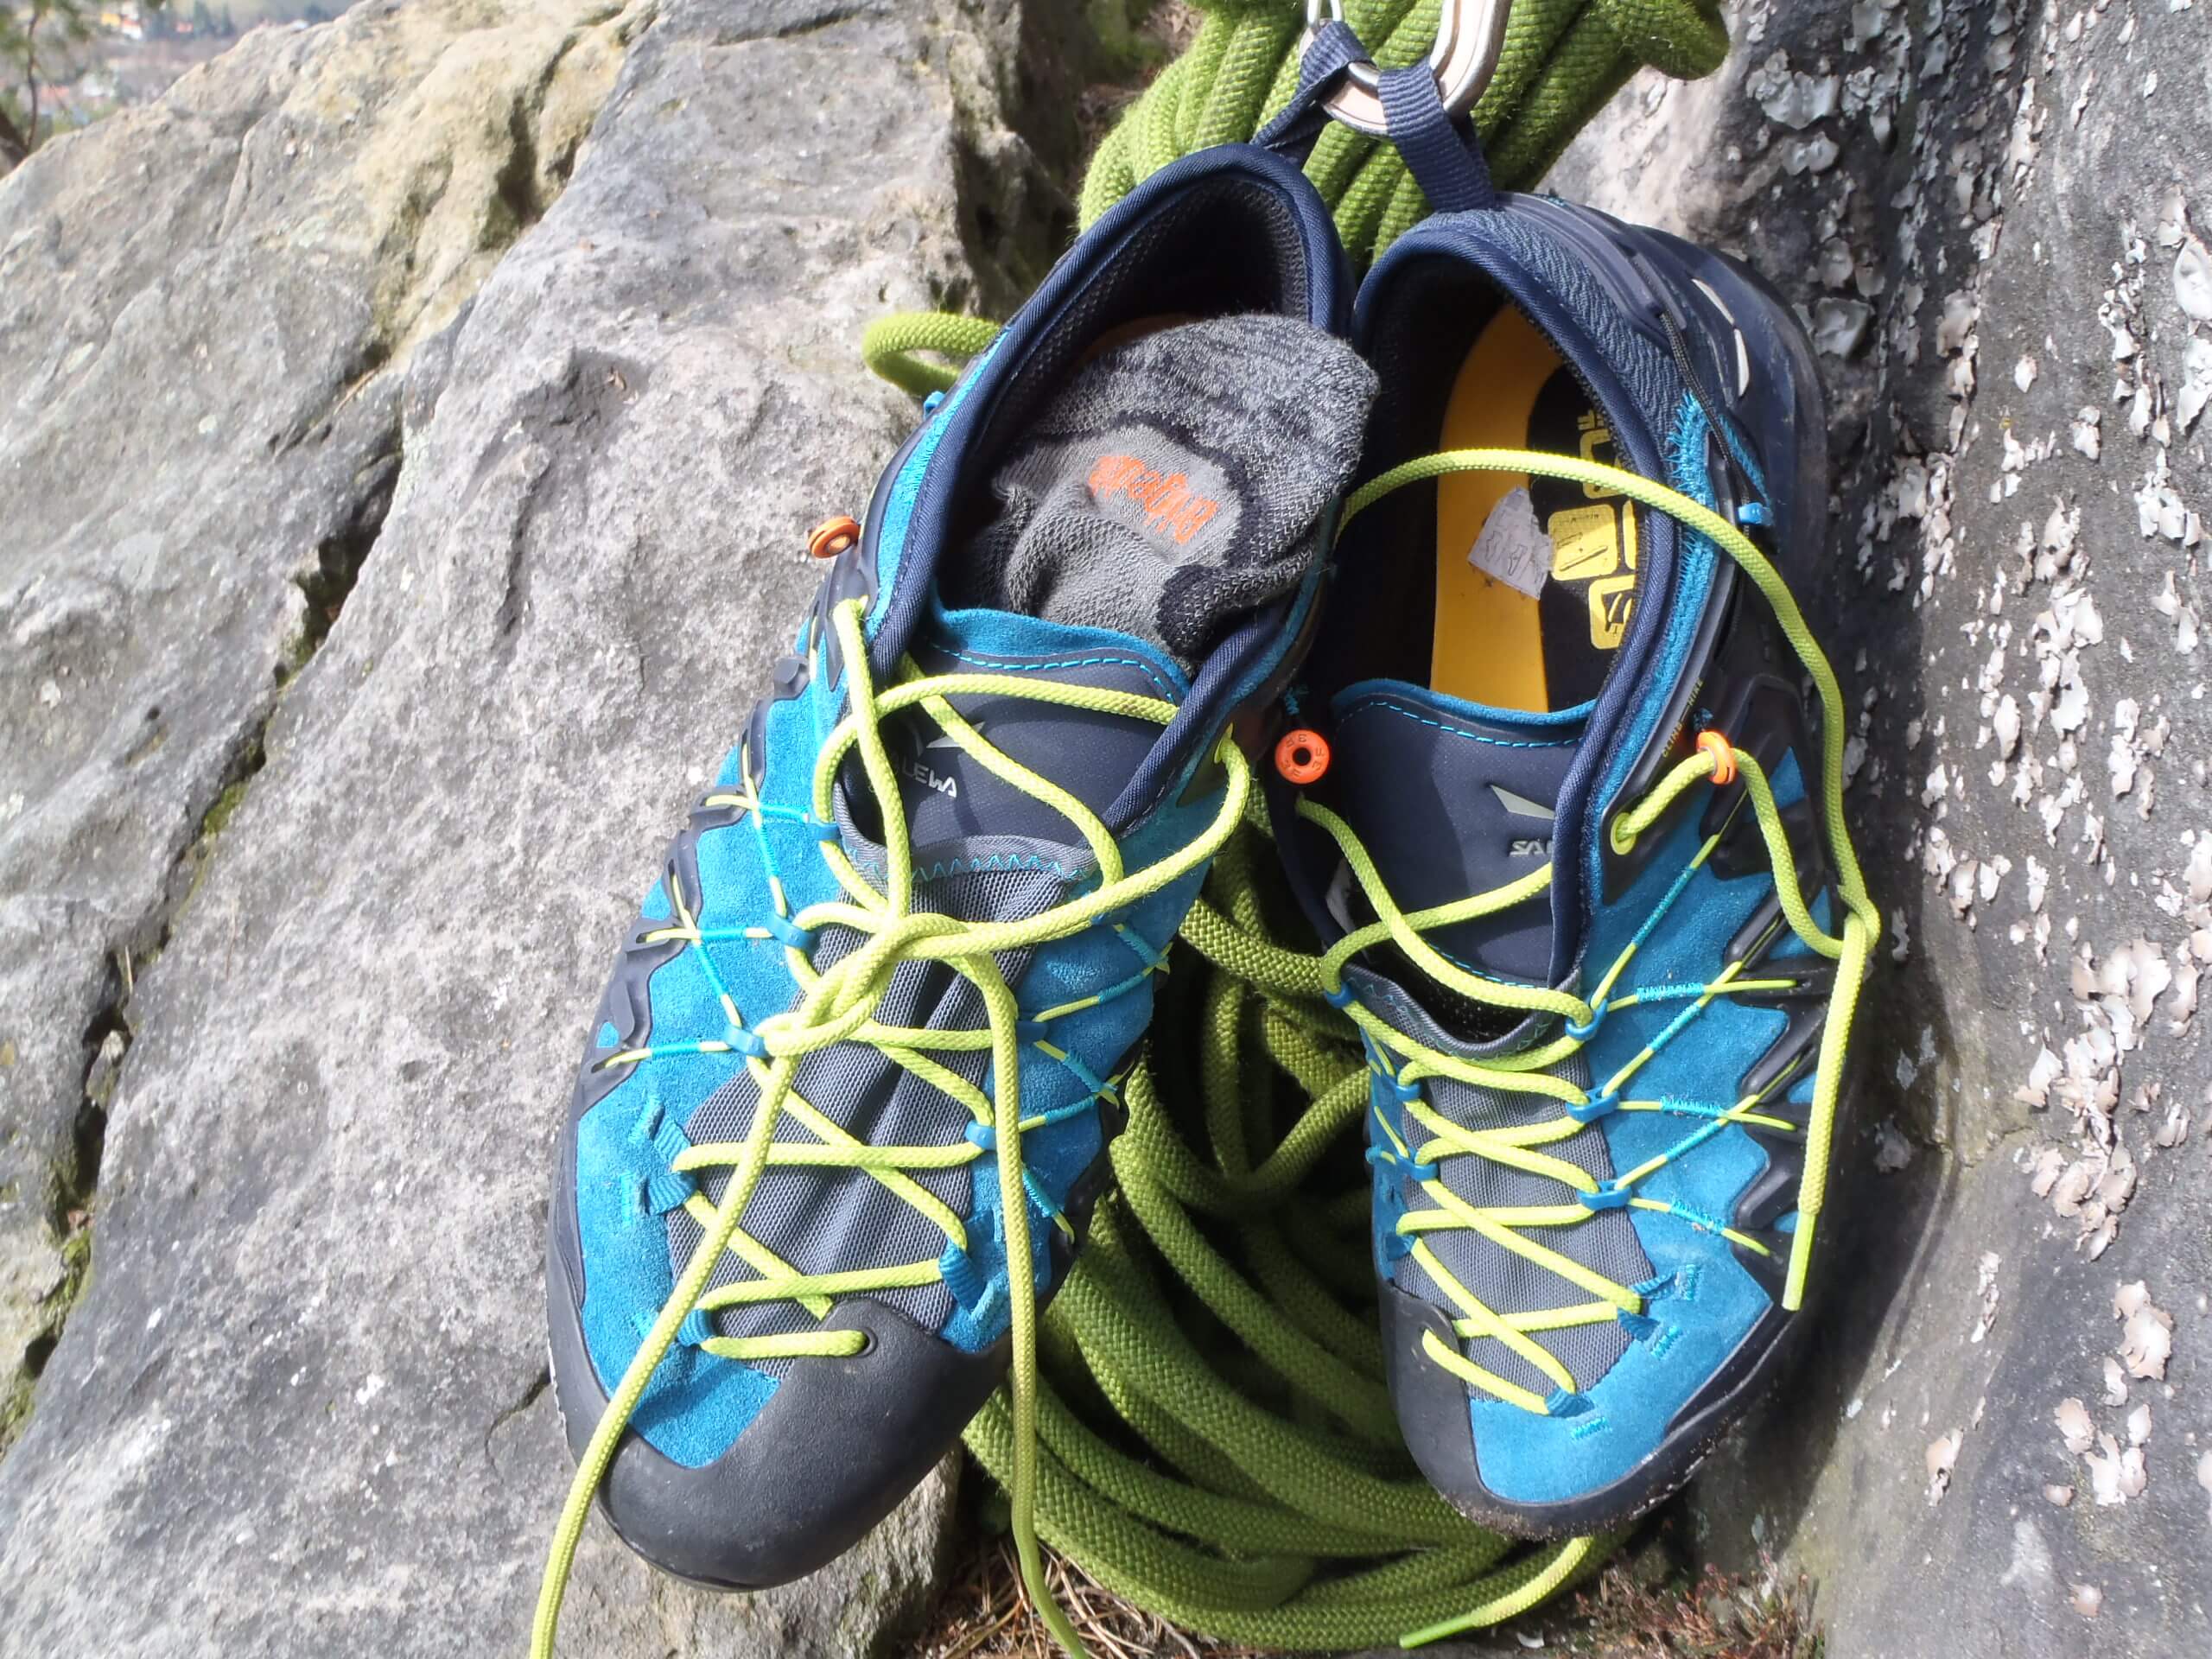 Skvělé boty do skal nebo jako nástupovky pod stěnu - Salewa Wildfire Edge.